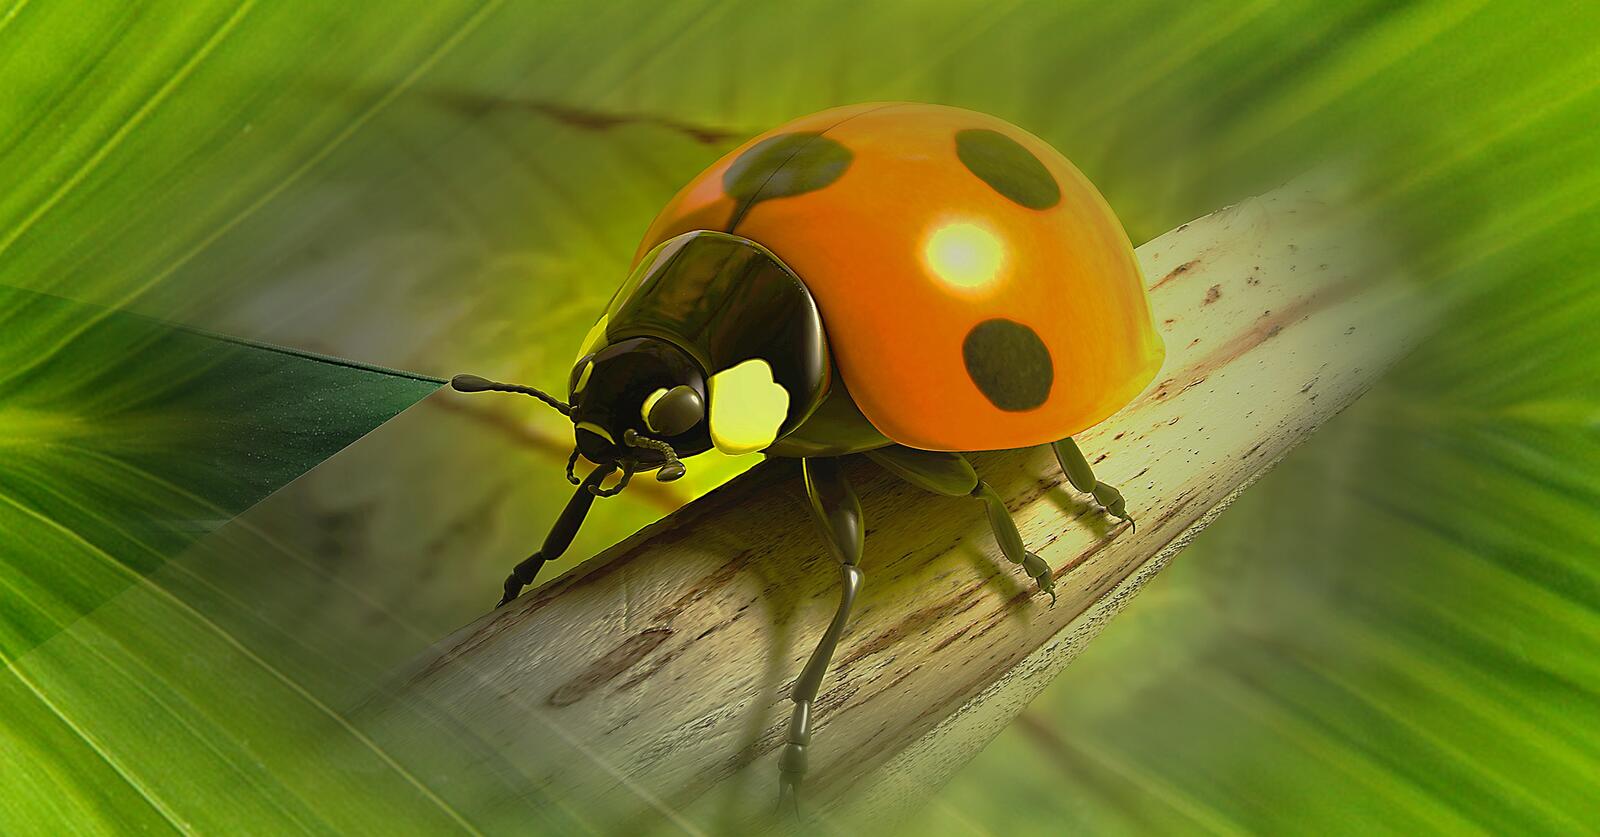 Wallpapers ladybug computer animation animation on the desktop